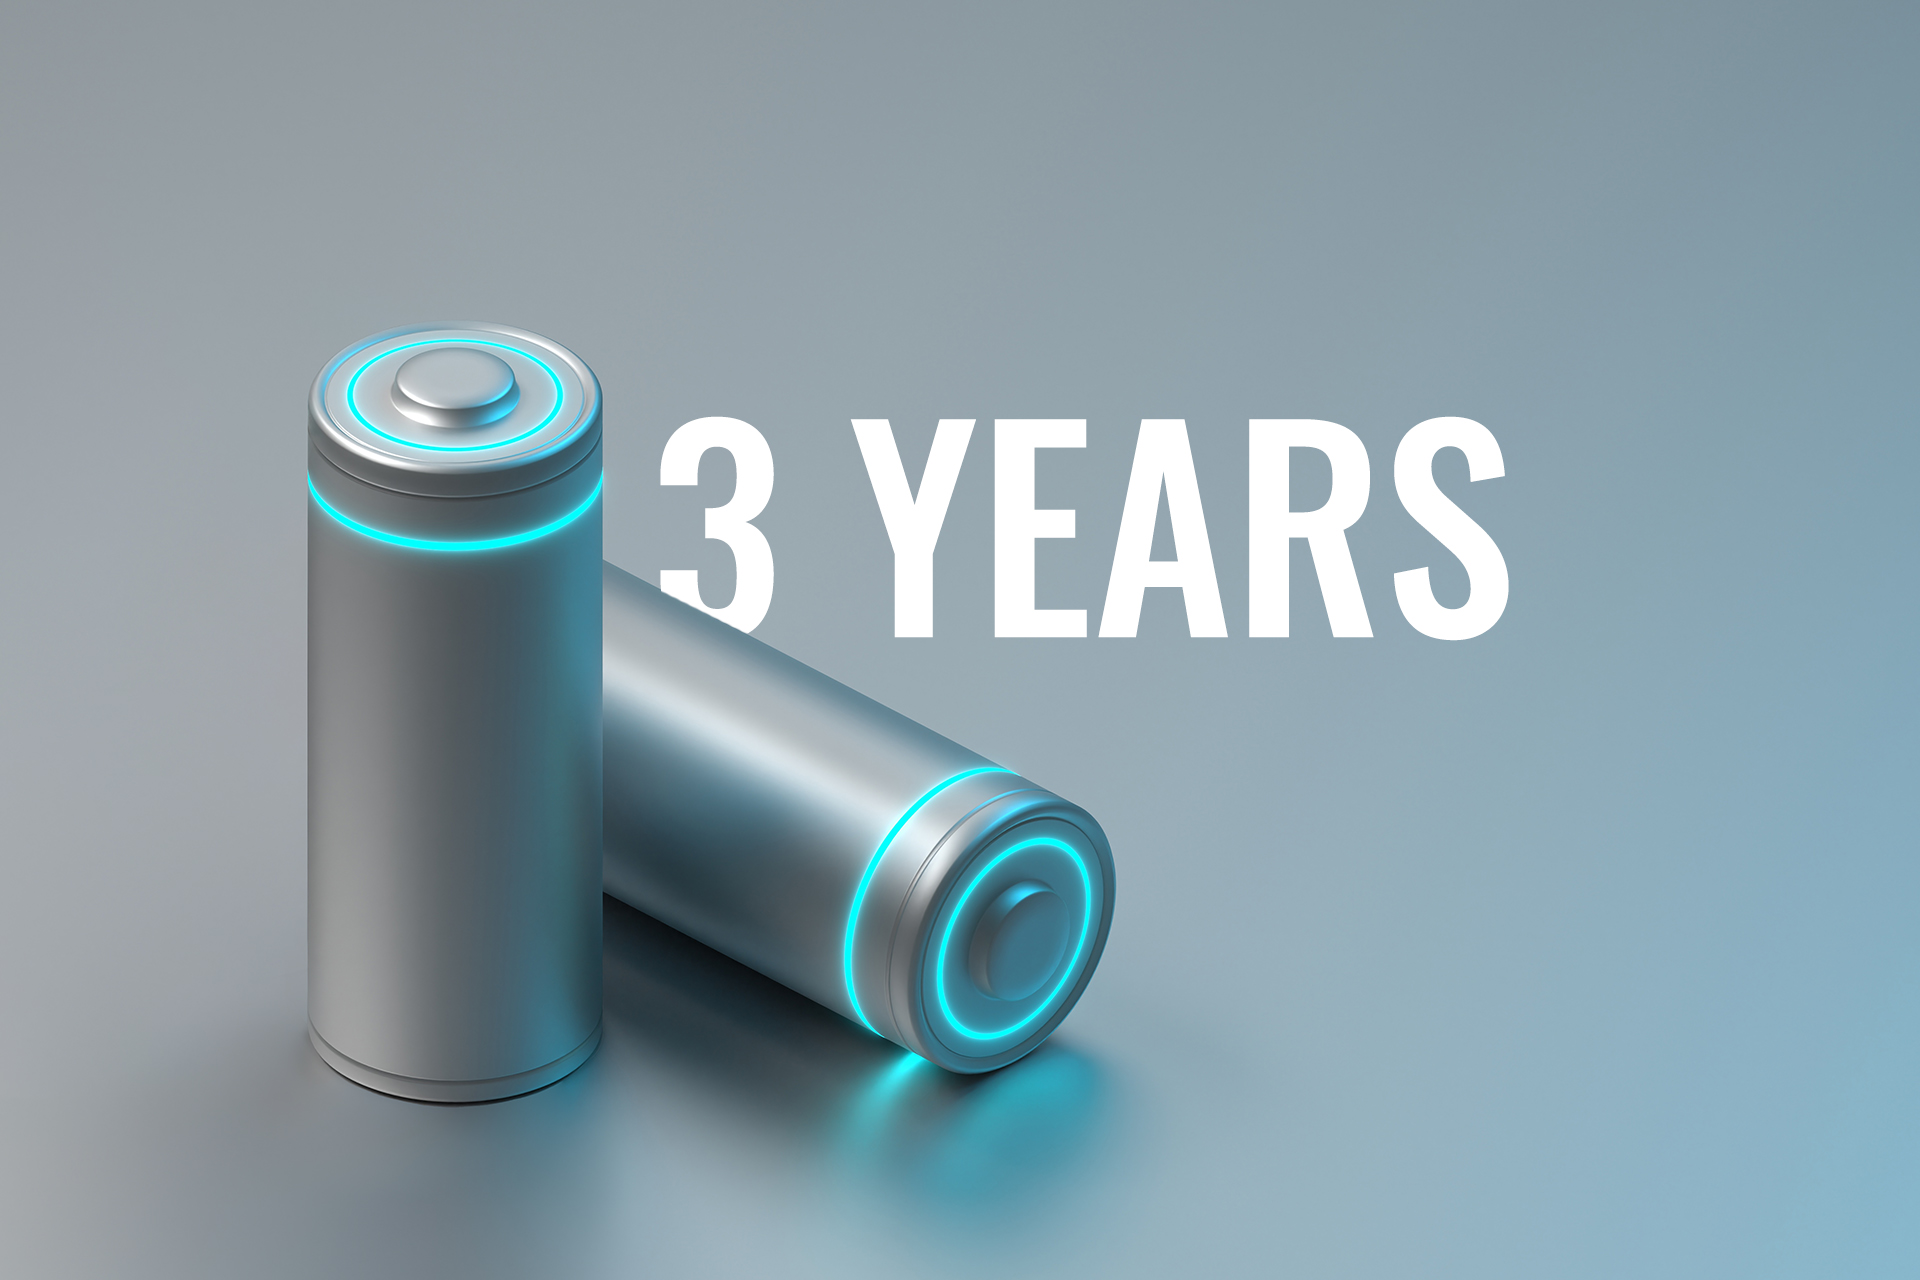 Duração da bateria de até 3 anos*